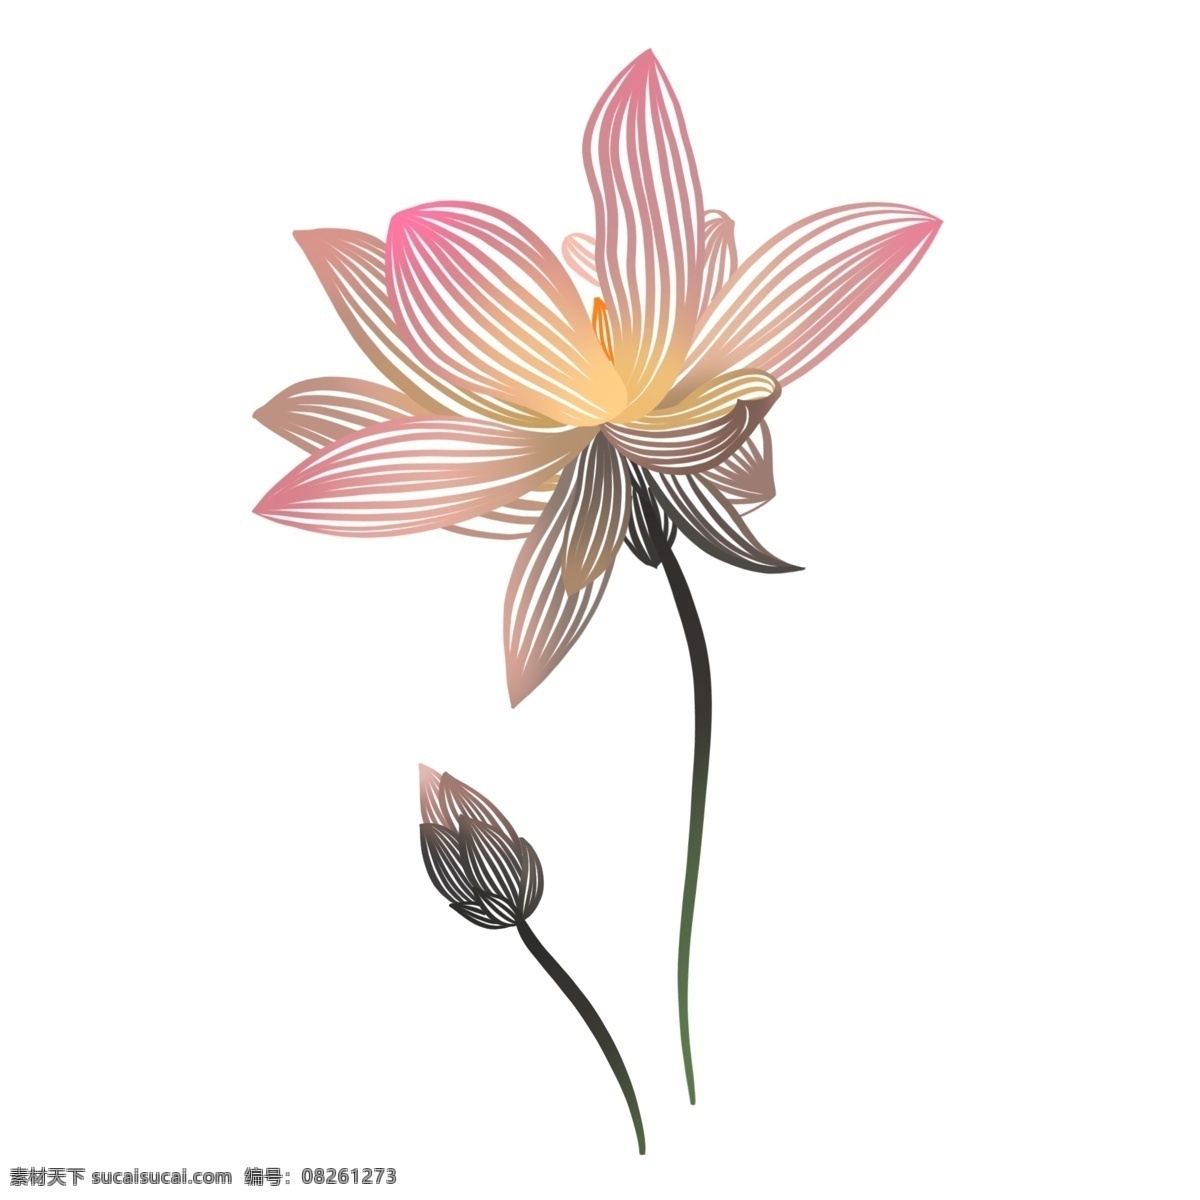 原创 手绘 插图 荷花 花蕾 元素 配 图 荷花花蕾 粉色 小清新 唯美 lotus